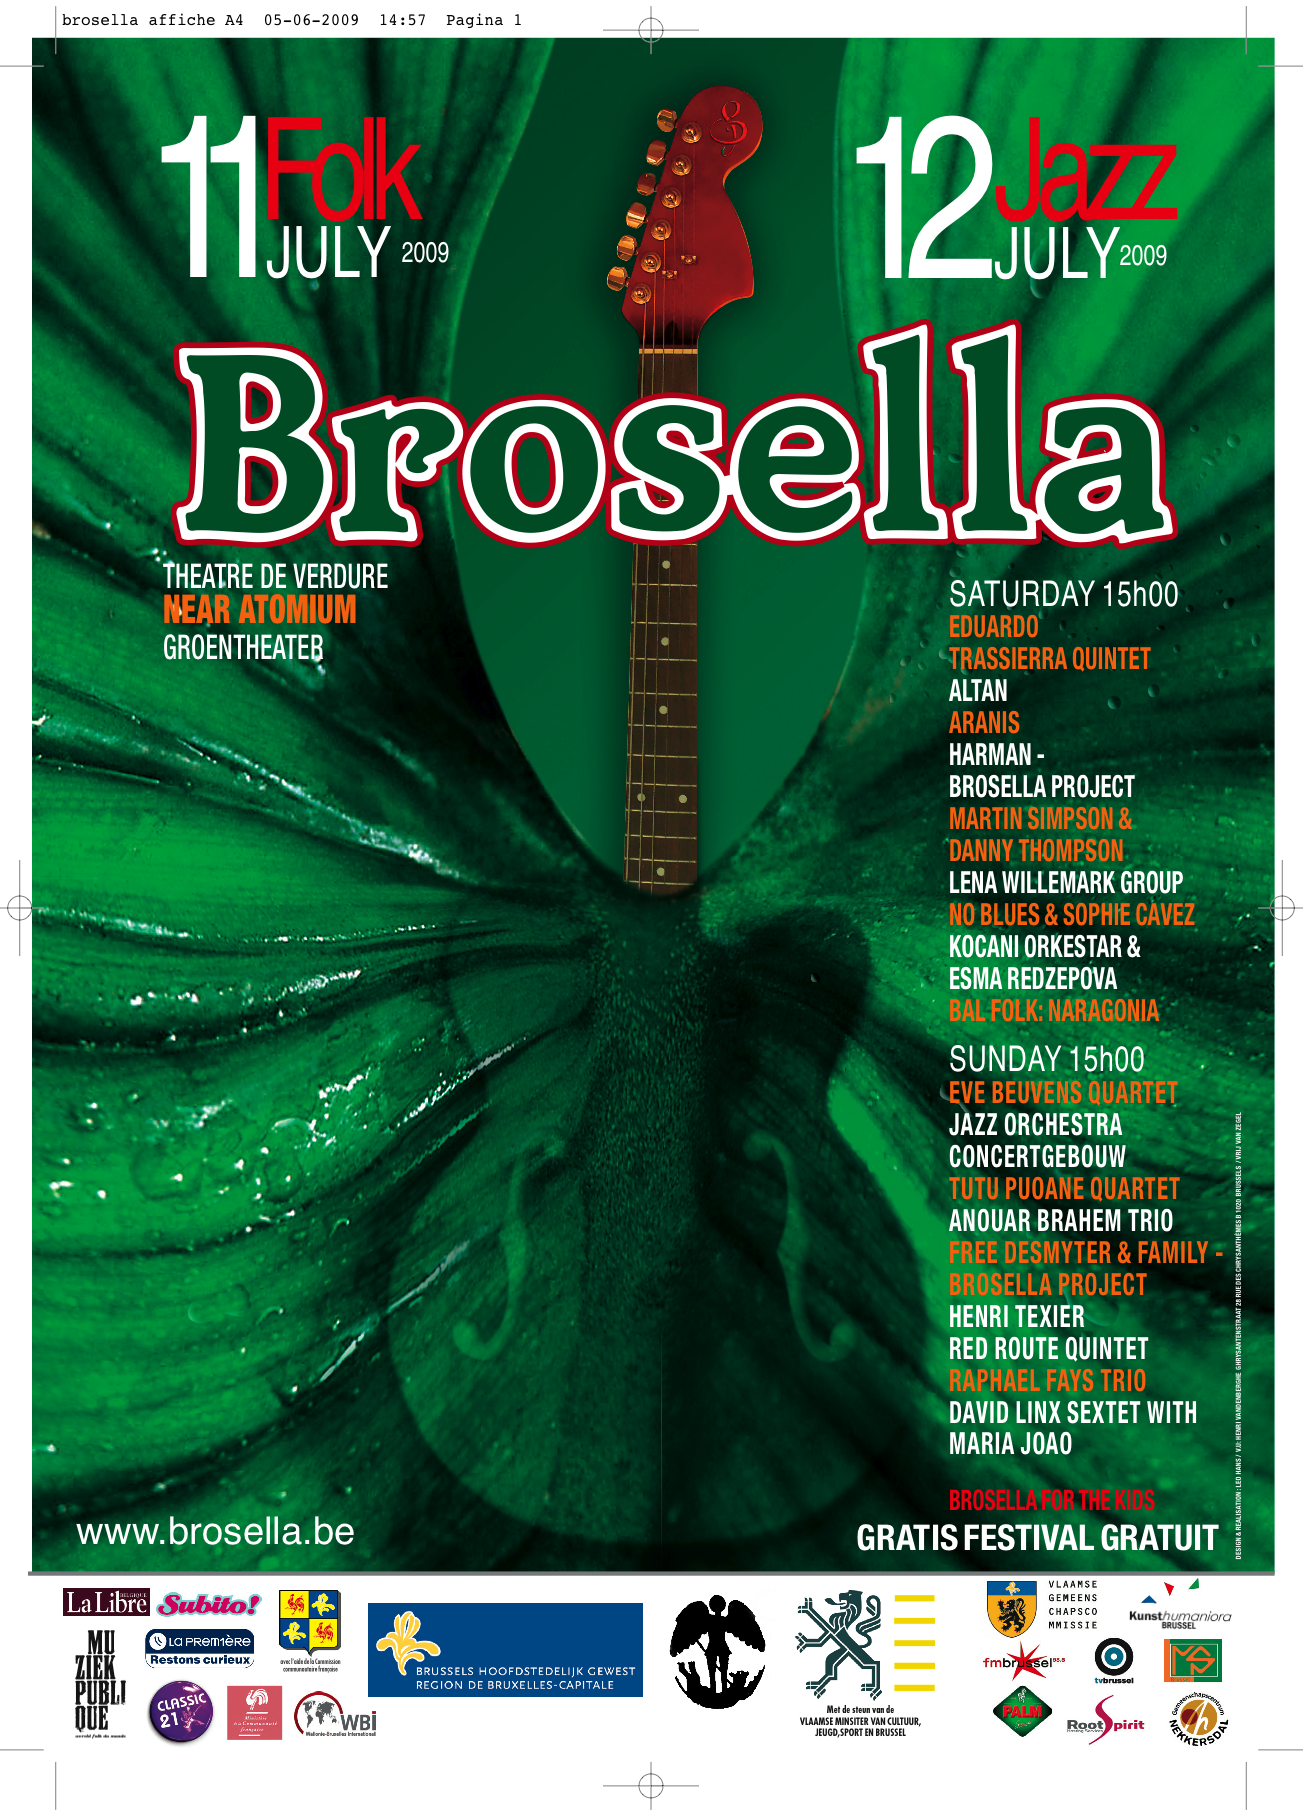 Un flop pour Anouar Brahem le 12/07 au Brosella Folk & Jazz (Bruxelles)